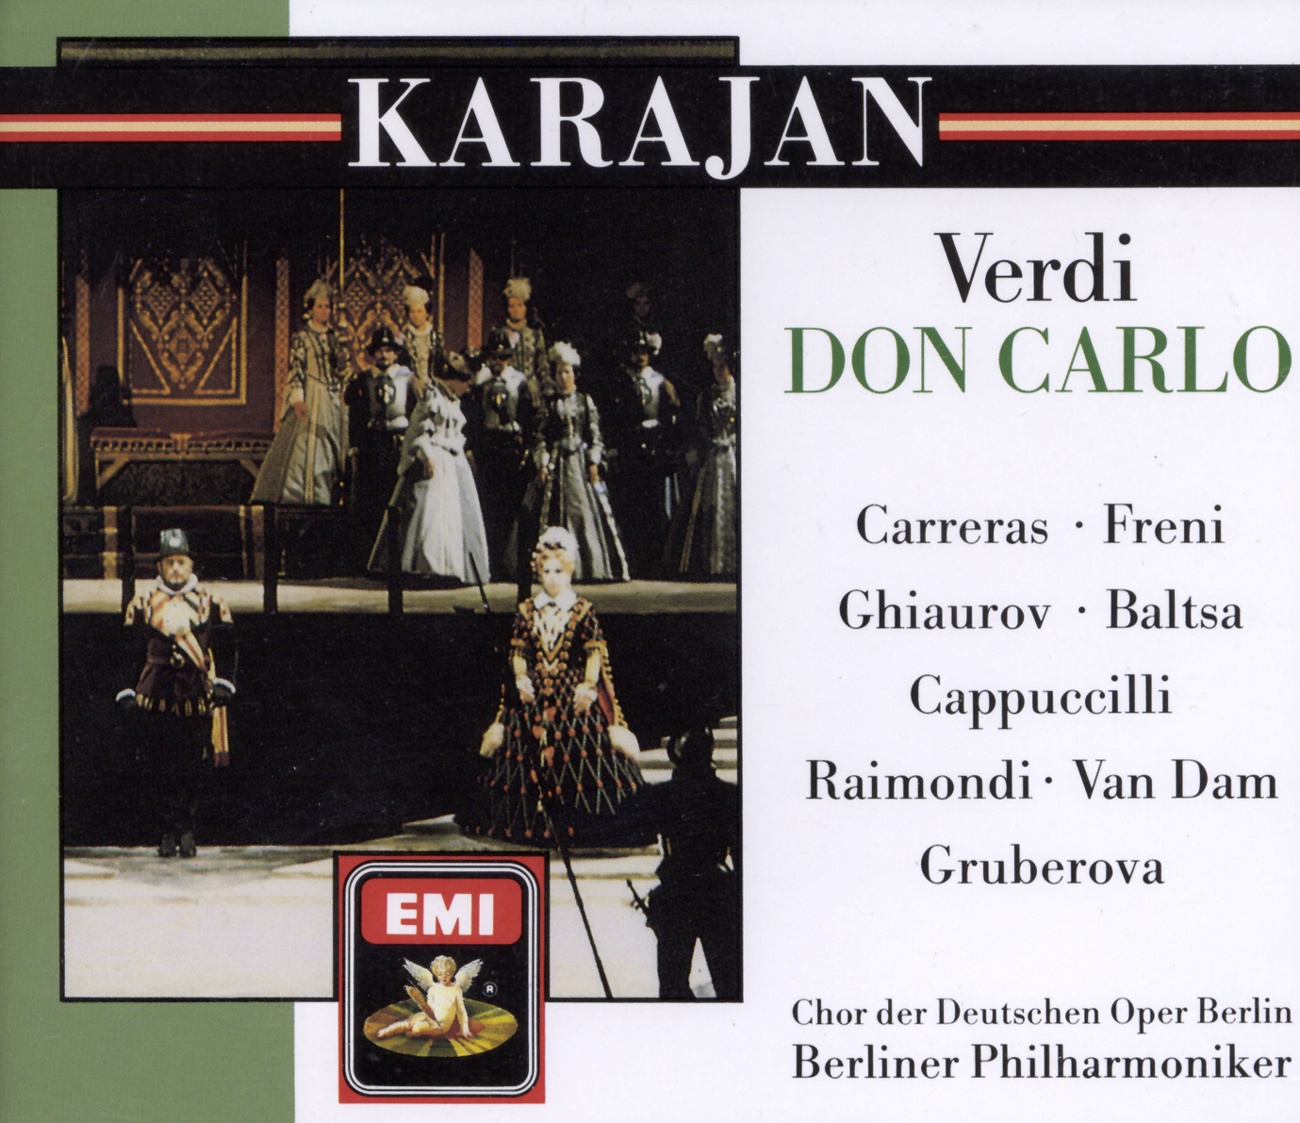 Don Carlo (1884 4 Act Version) (1988 Digital Remaster), ATTO TERZO/ACT 3/DRITTER AKT/TROISIEME ACTE, Scena seconda/Scene 2/Zweite Szene/Deuxième Scène: Son io, mio Carlo (Rodrigo/Carlo)